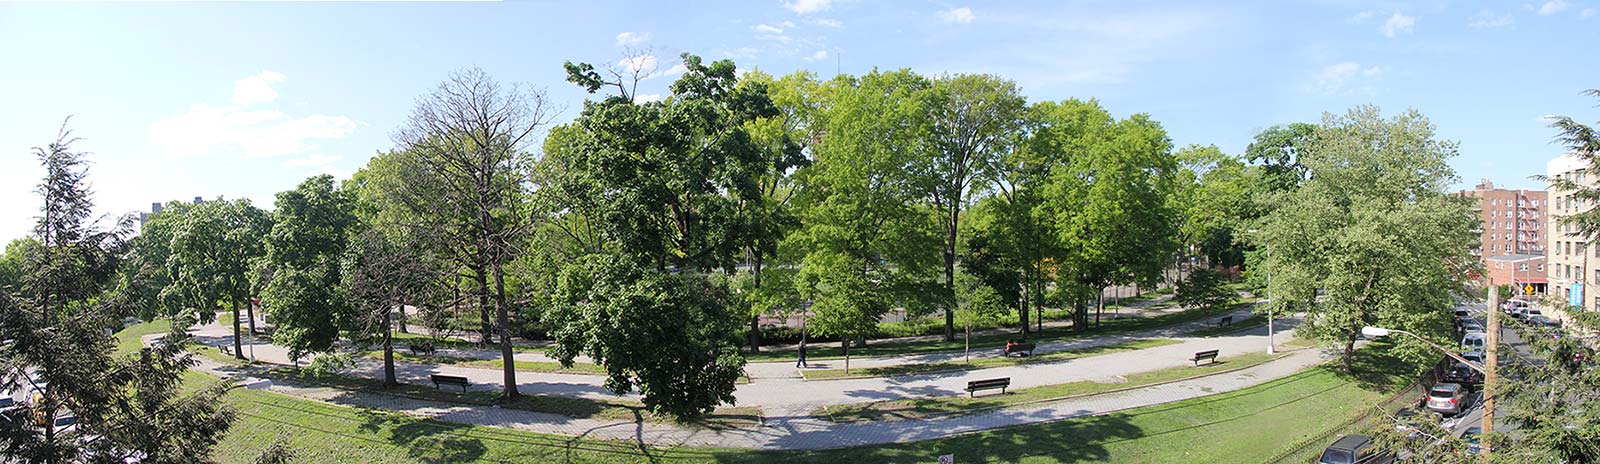 Oval Park Panorama Spring